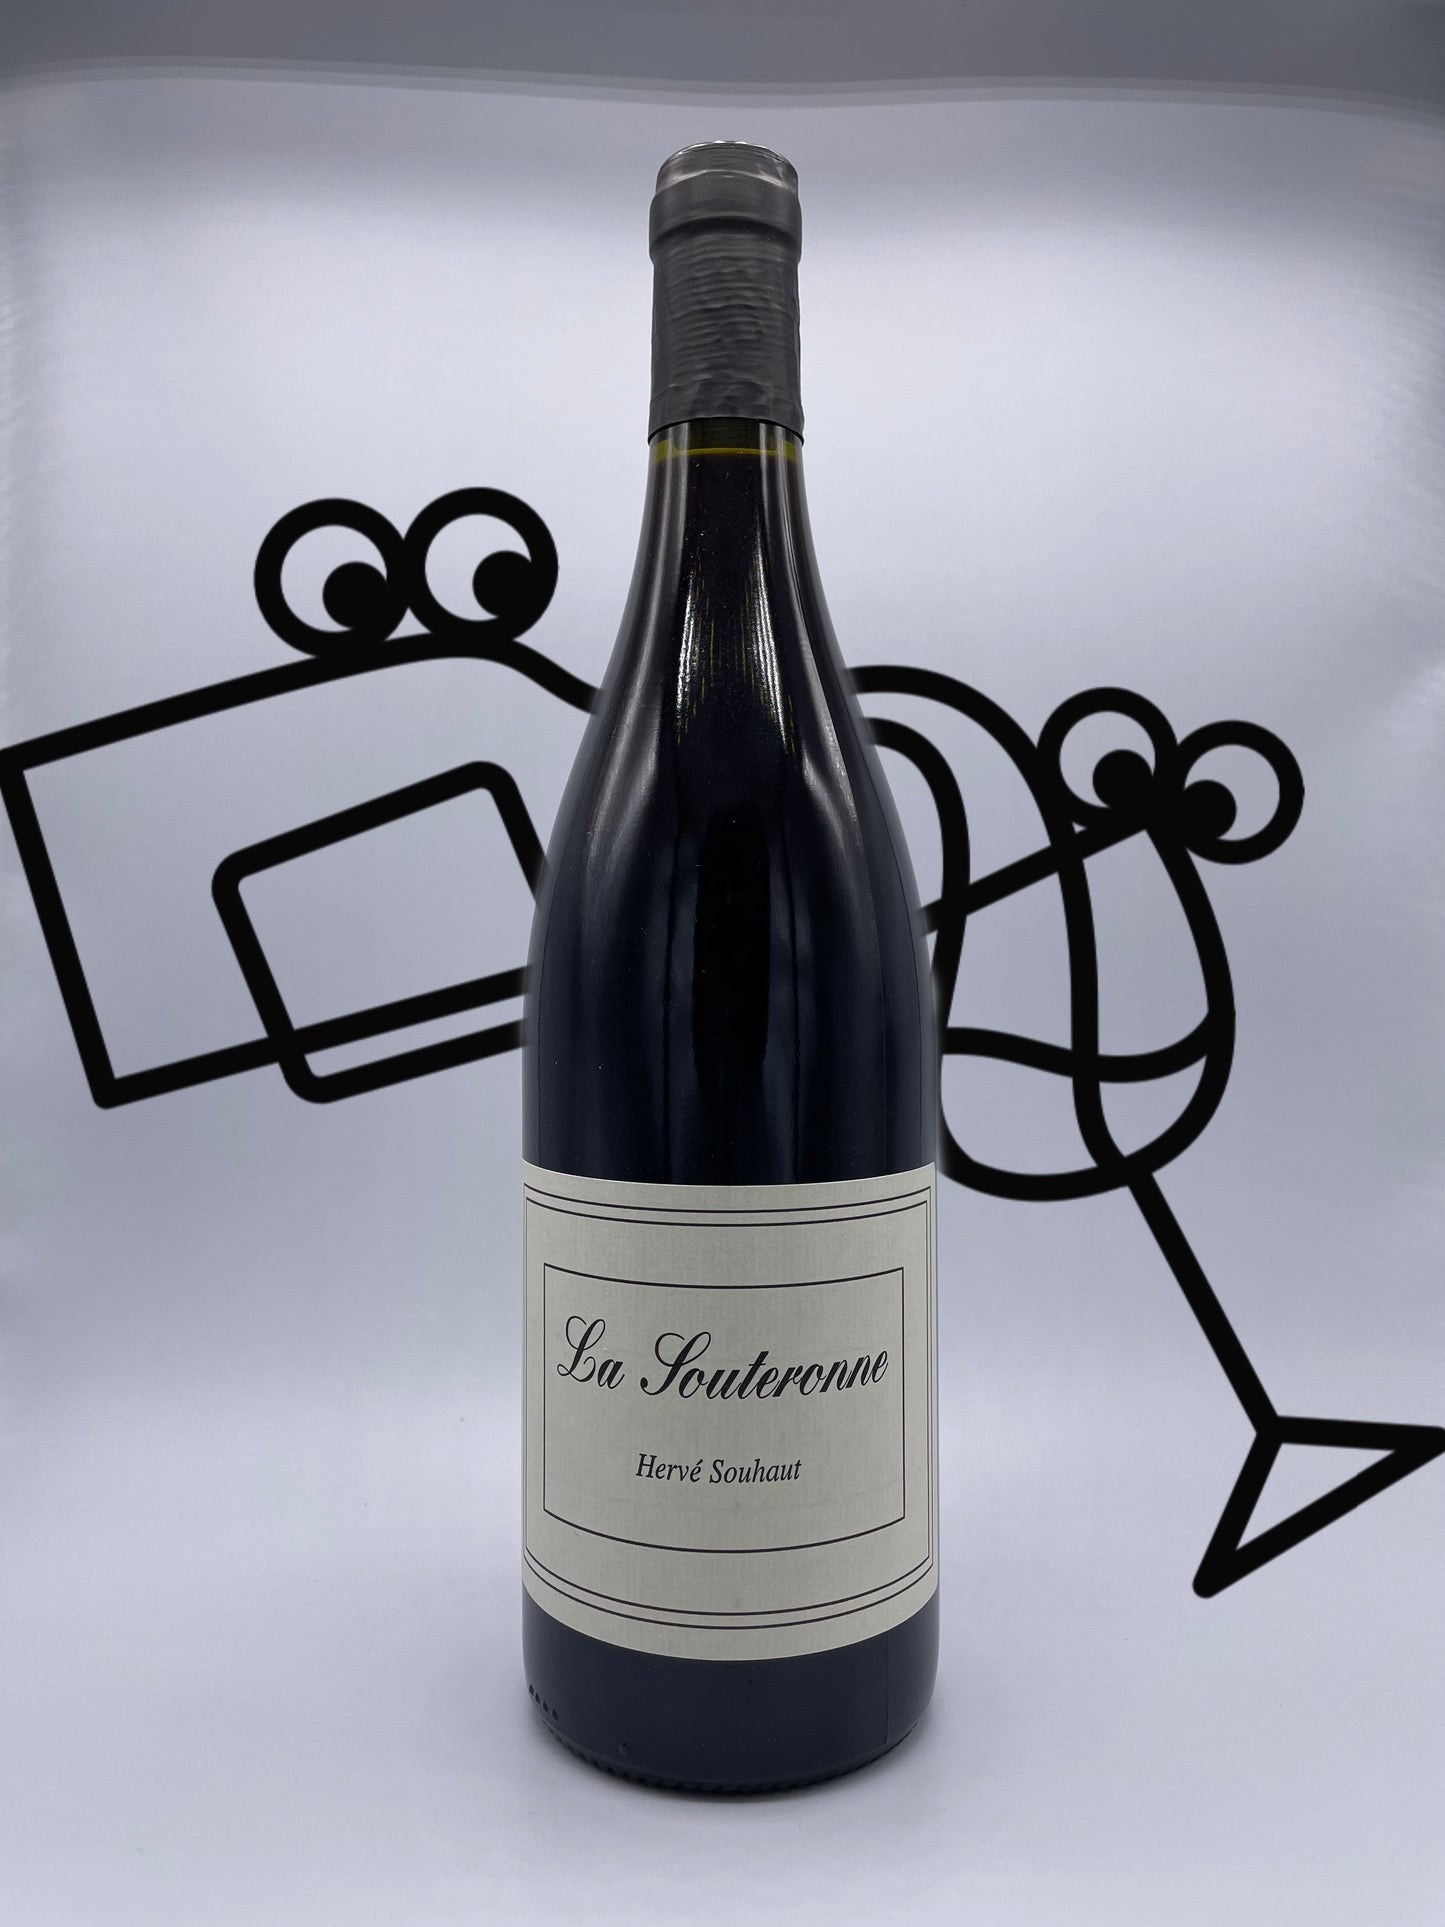 Herve Souhaut La Souteronne Gamay France Williston Park Wines